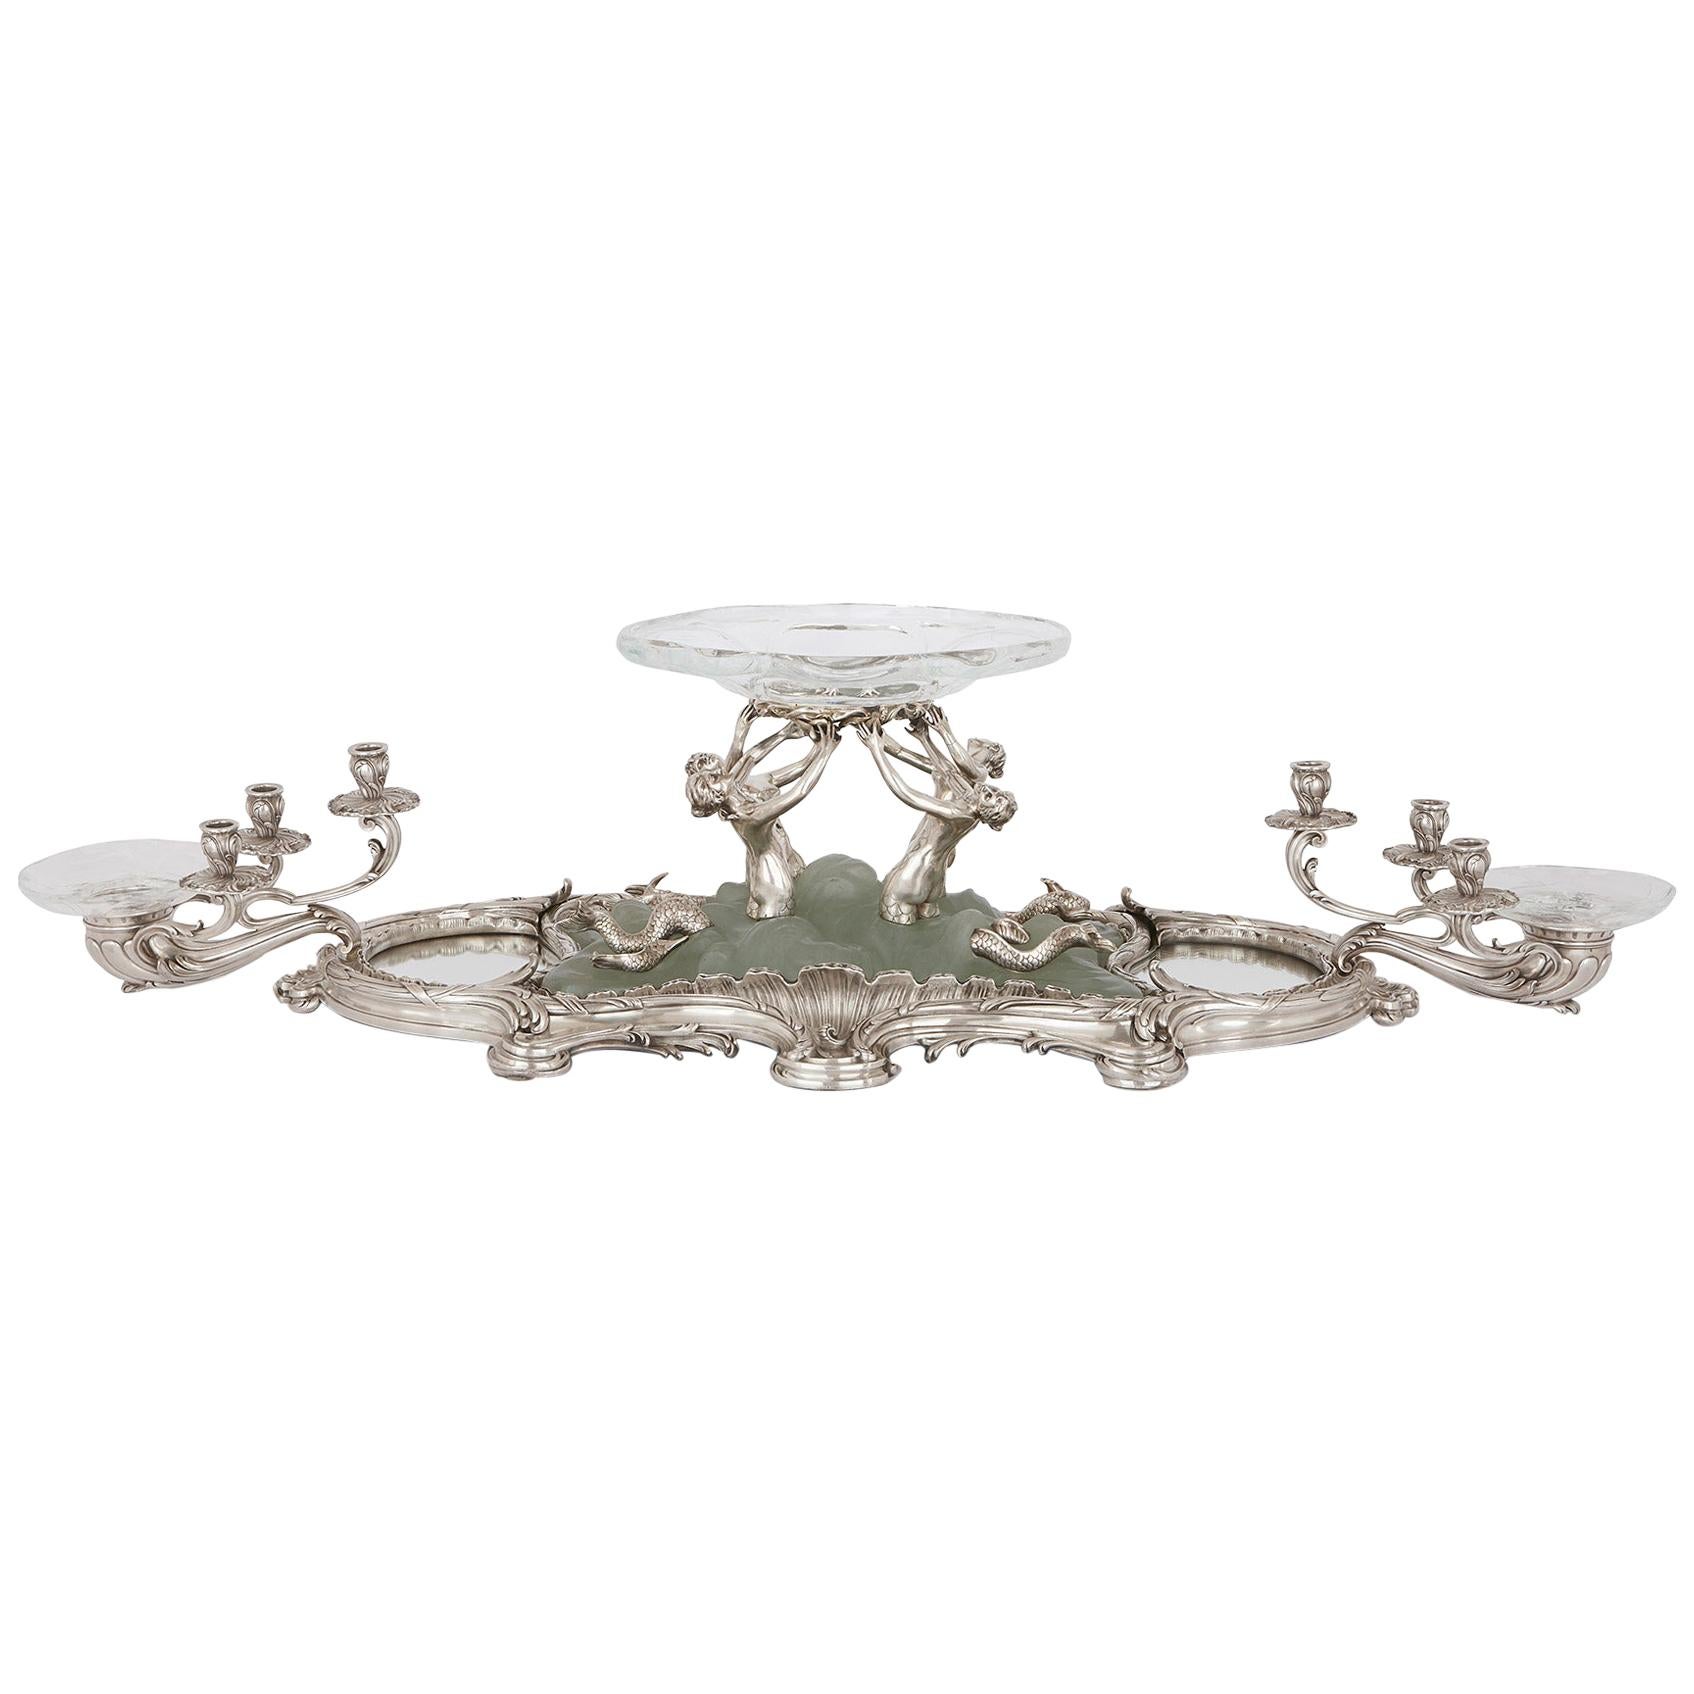 Jugendstil-Tisch aus Silber, Kristall und Pate De Verre im Art nouveau-Stil von Falize